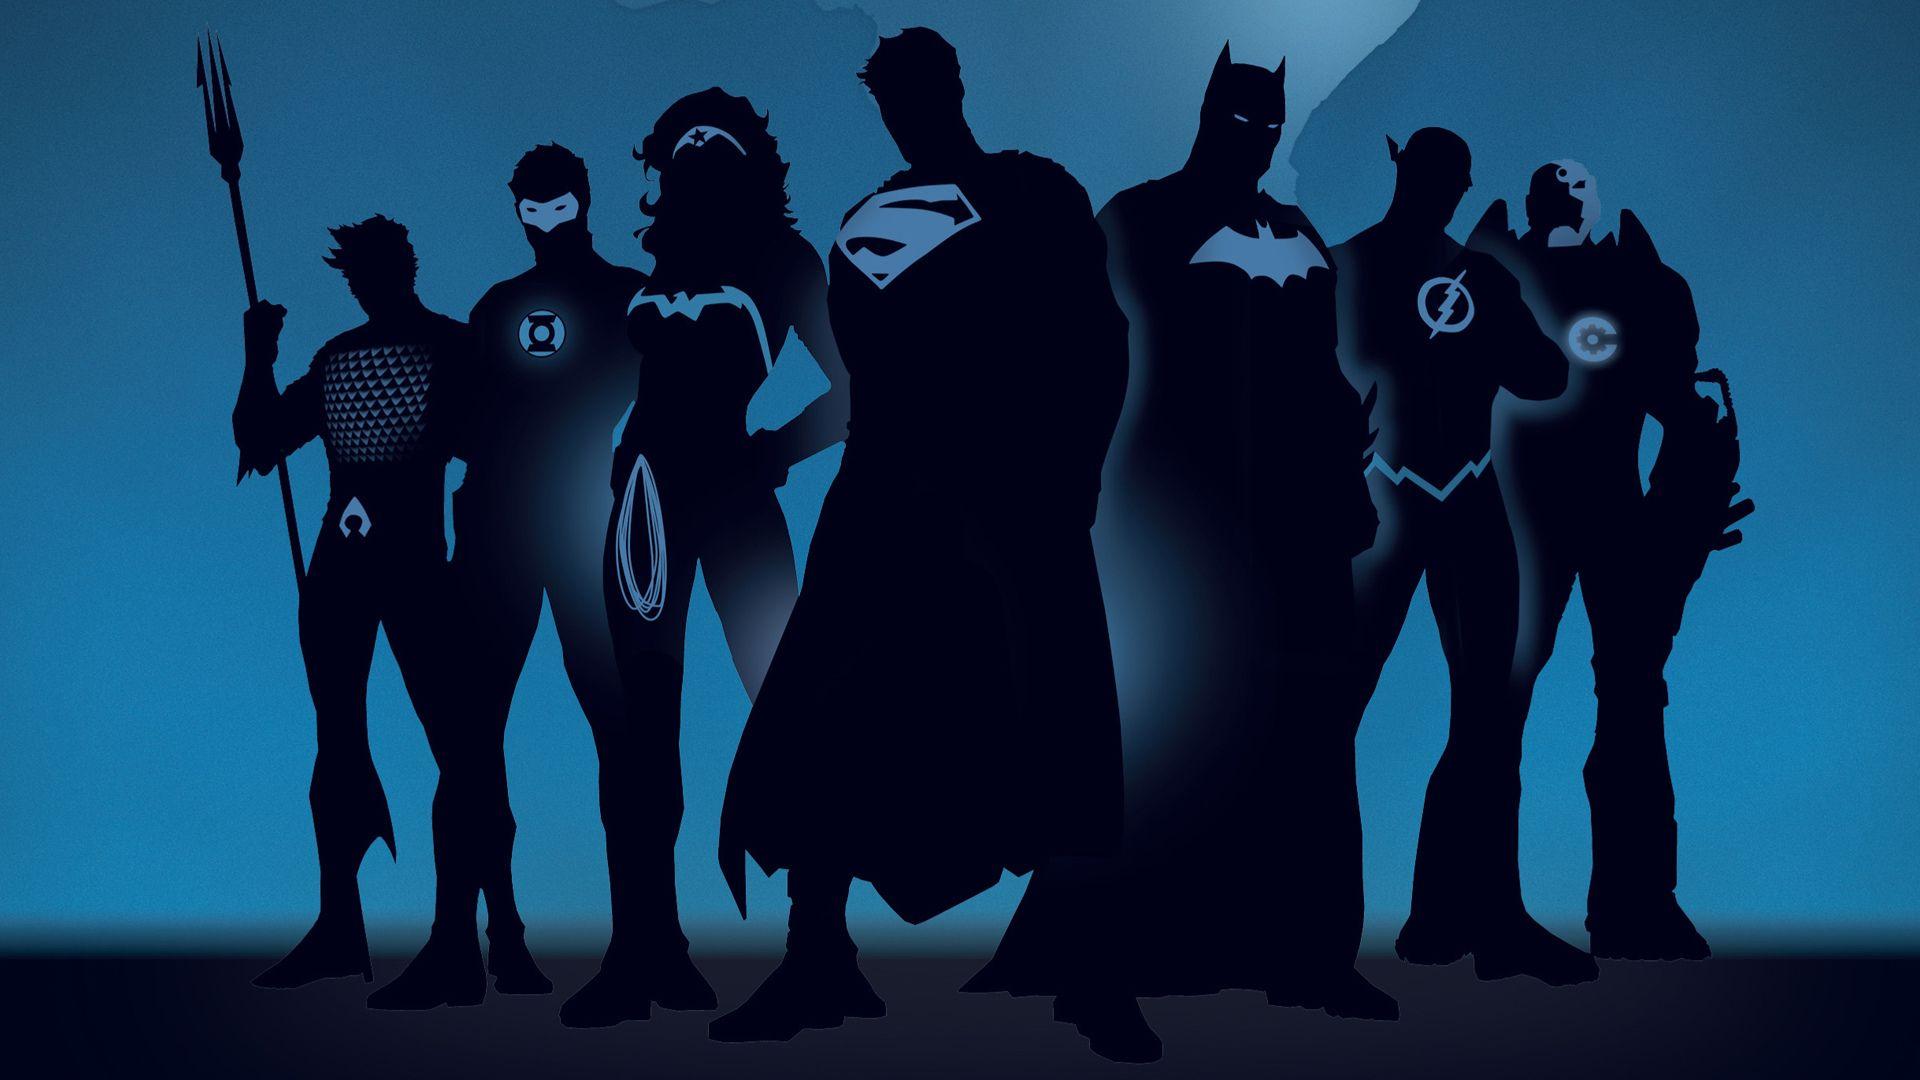 justice league symbol wallpaper